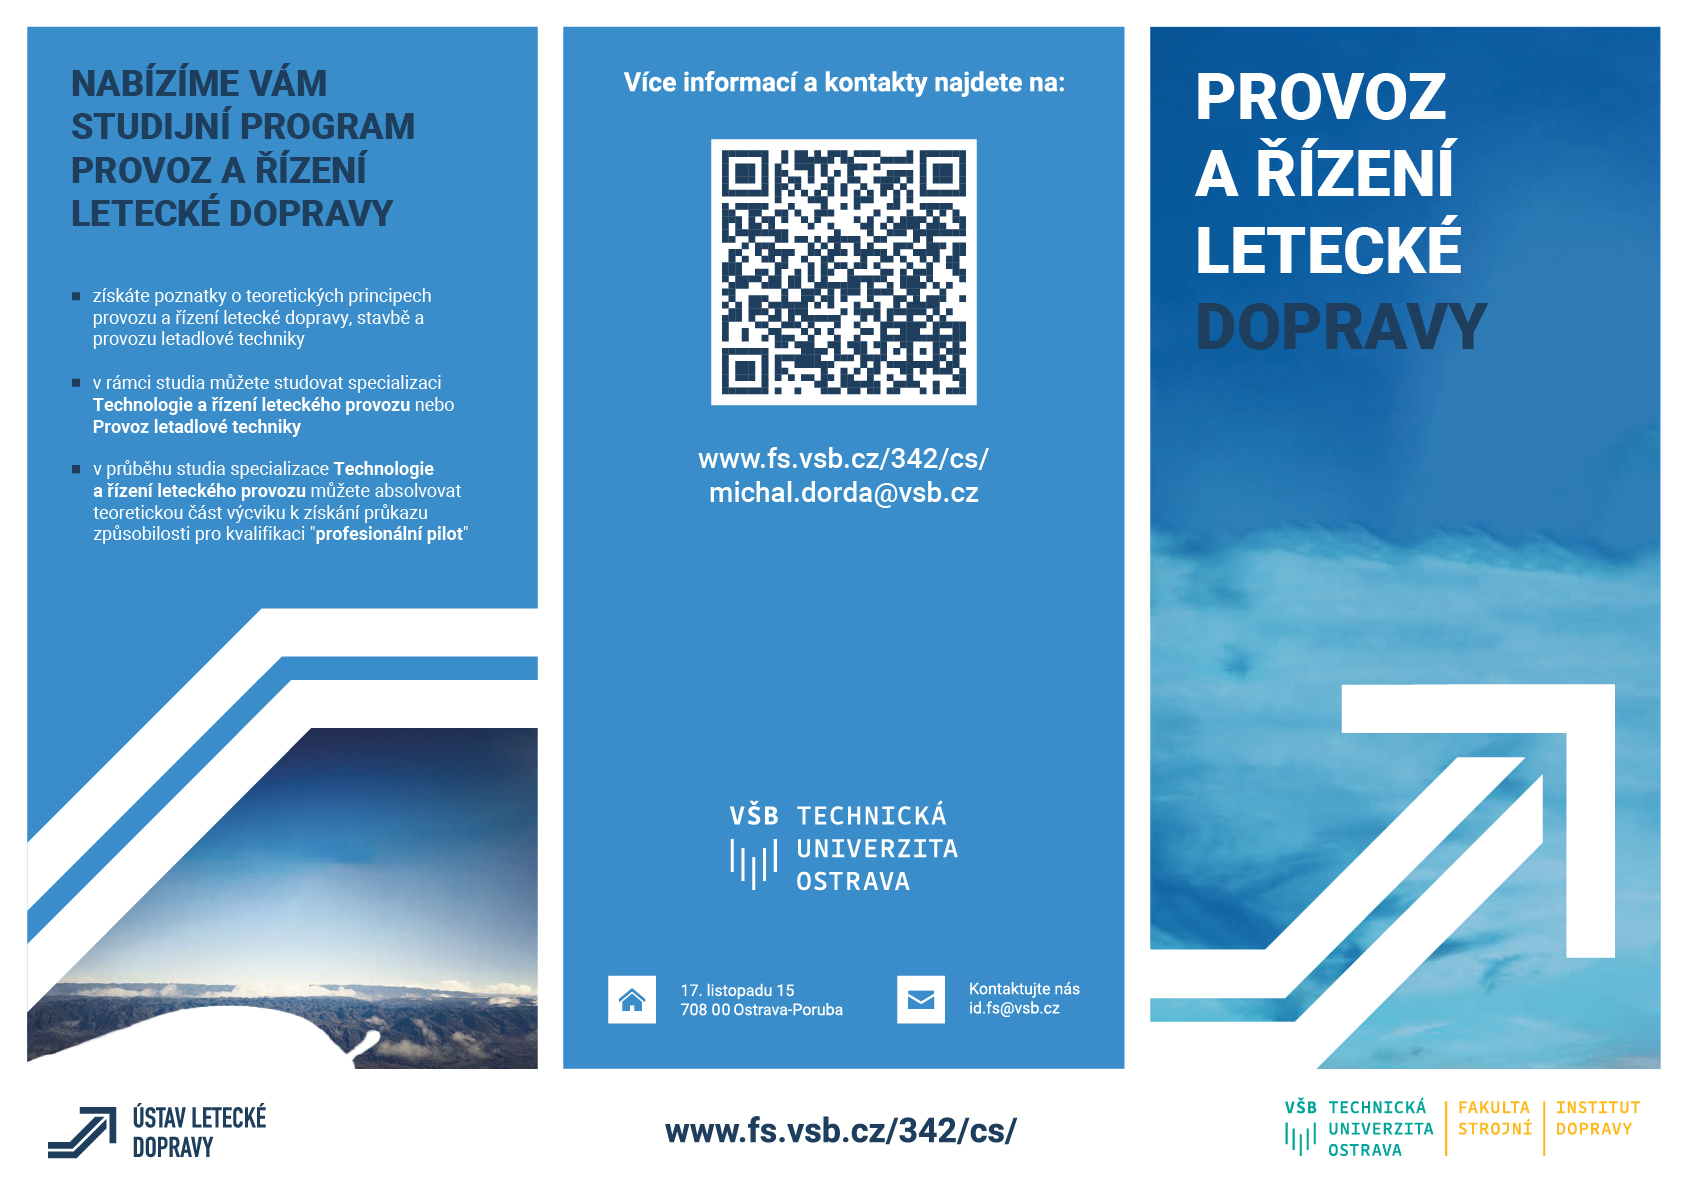 Provoz_a_rizeni_letecke_dopravy_letak_1